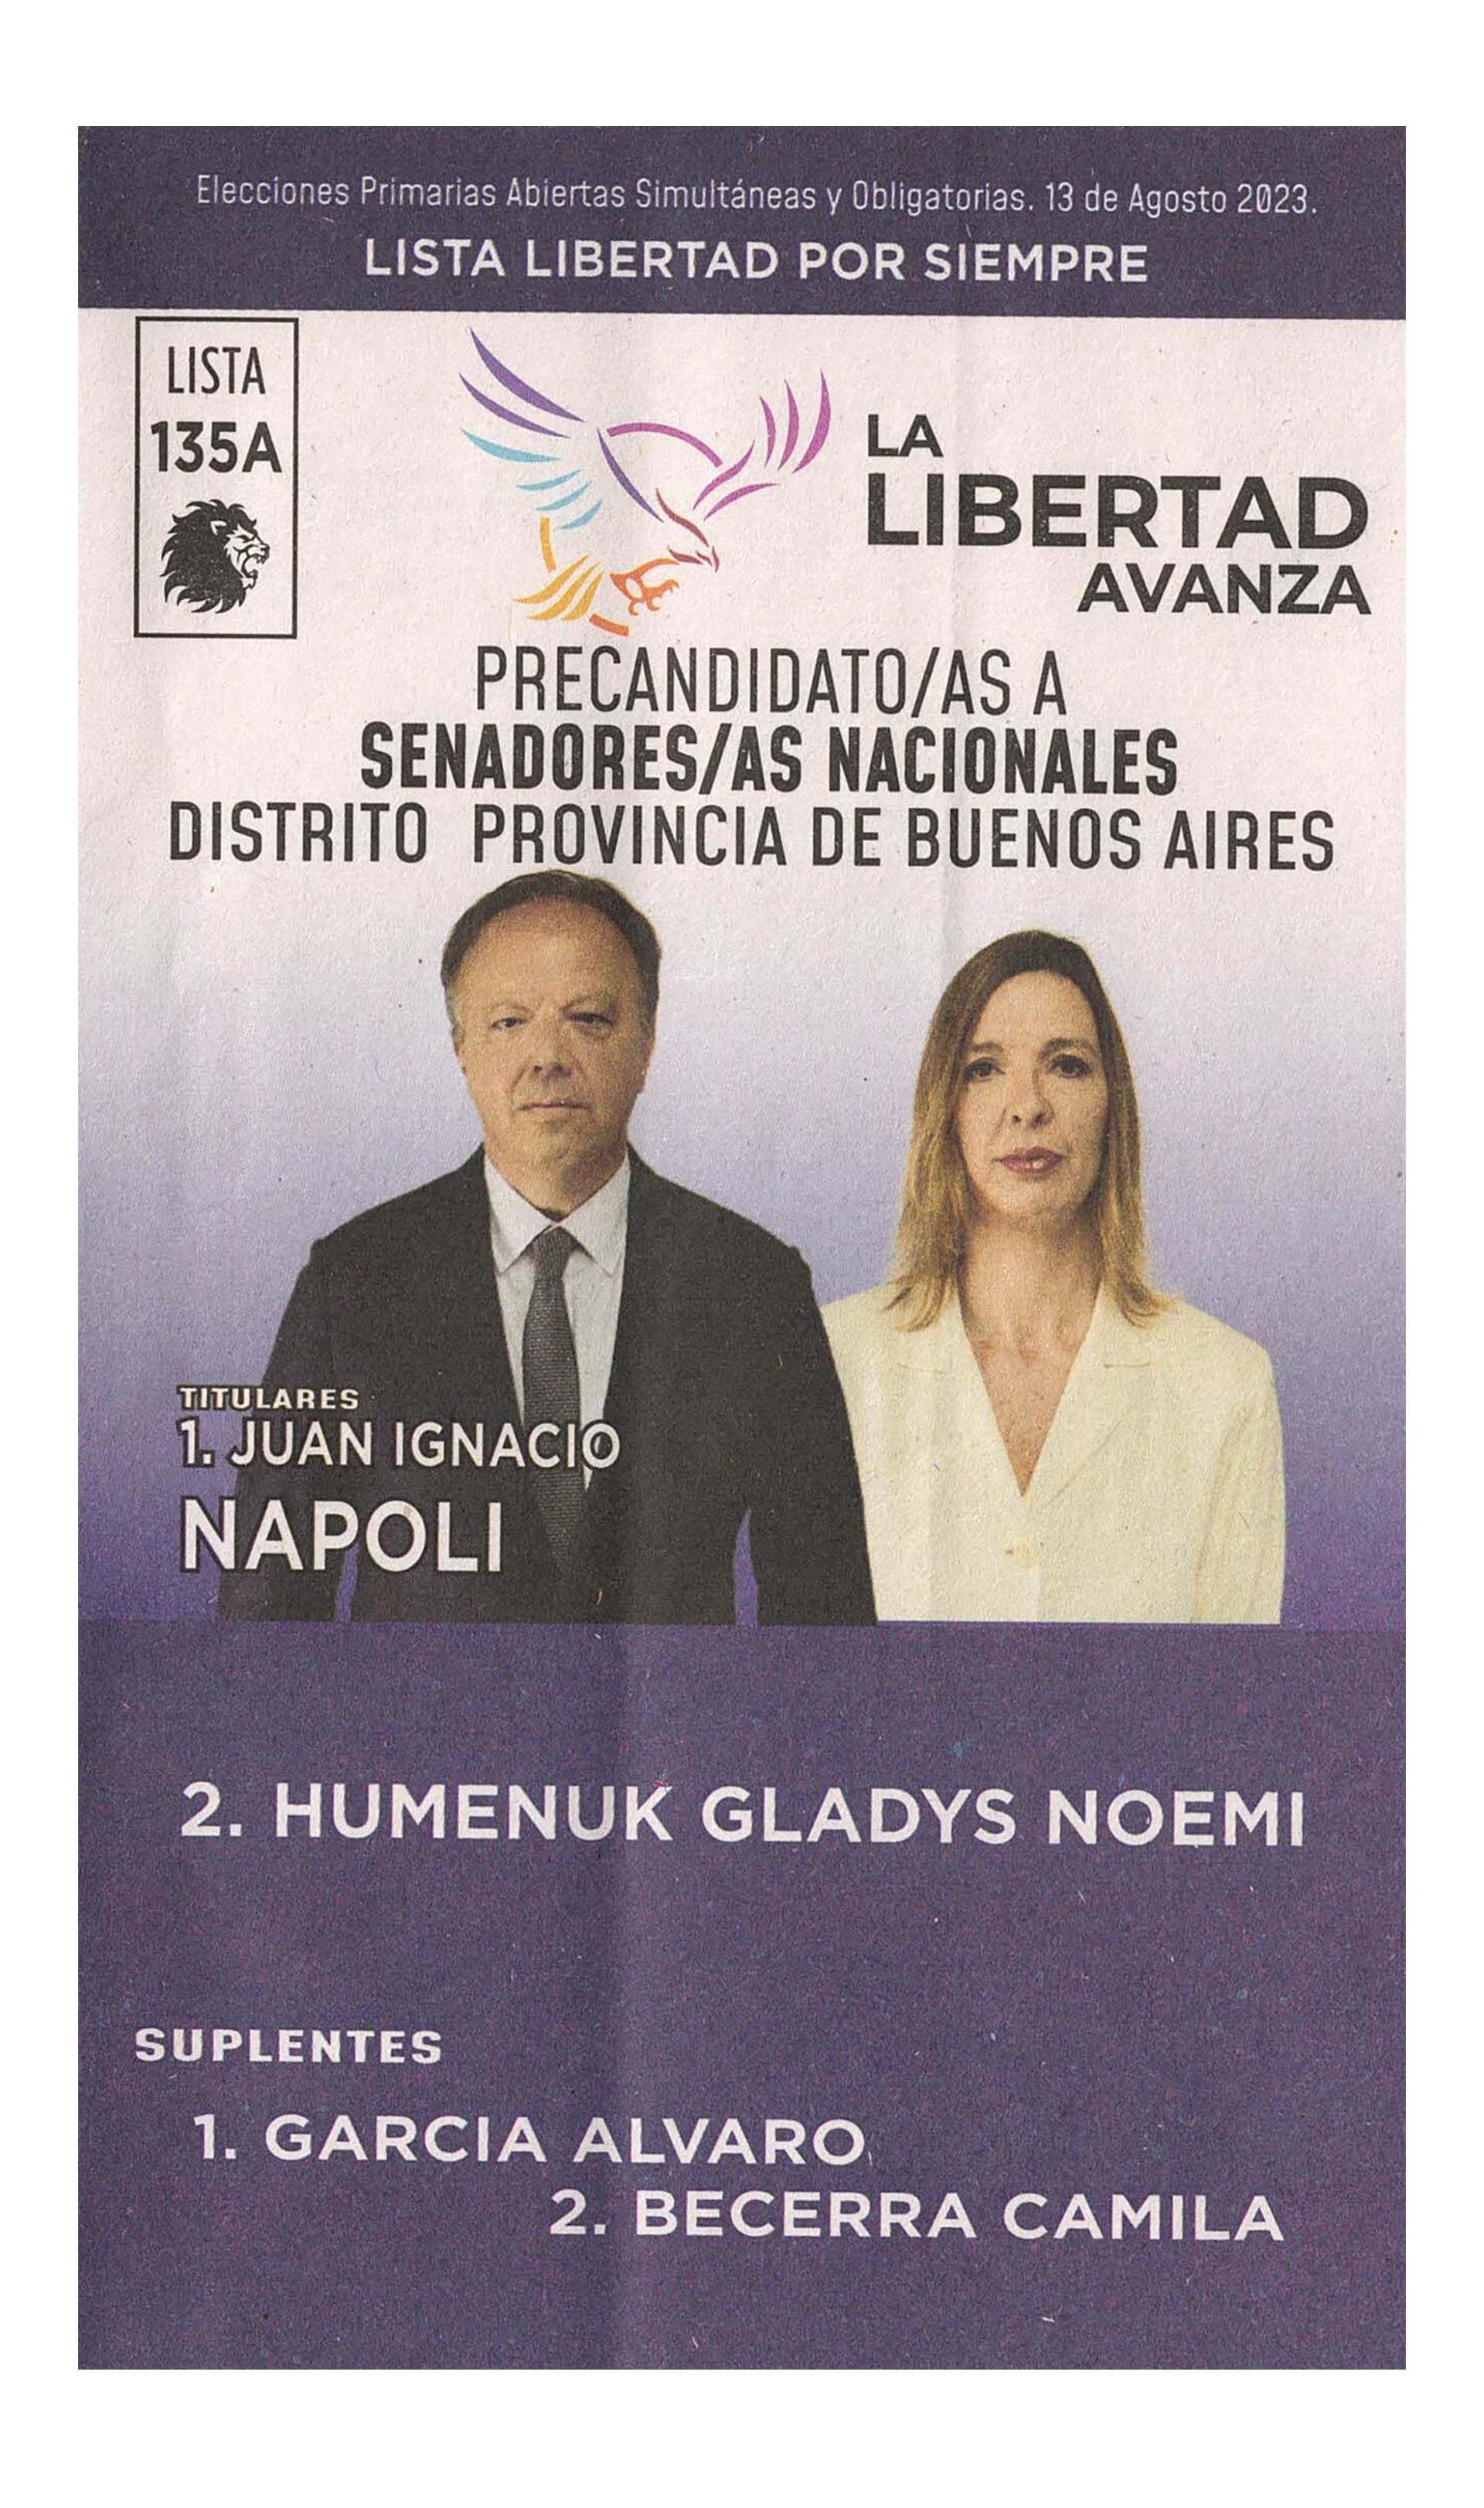 La boleta oficial de La Libertad Avanza de precandidatos a senadores nacionales de Buenos Aires